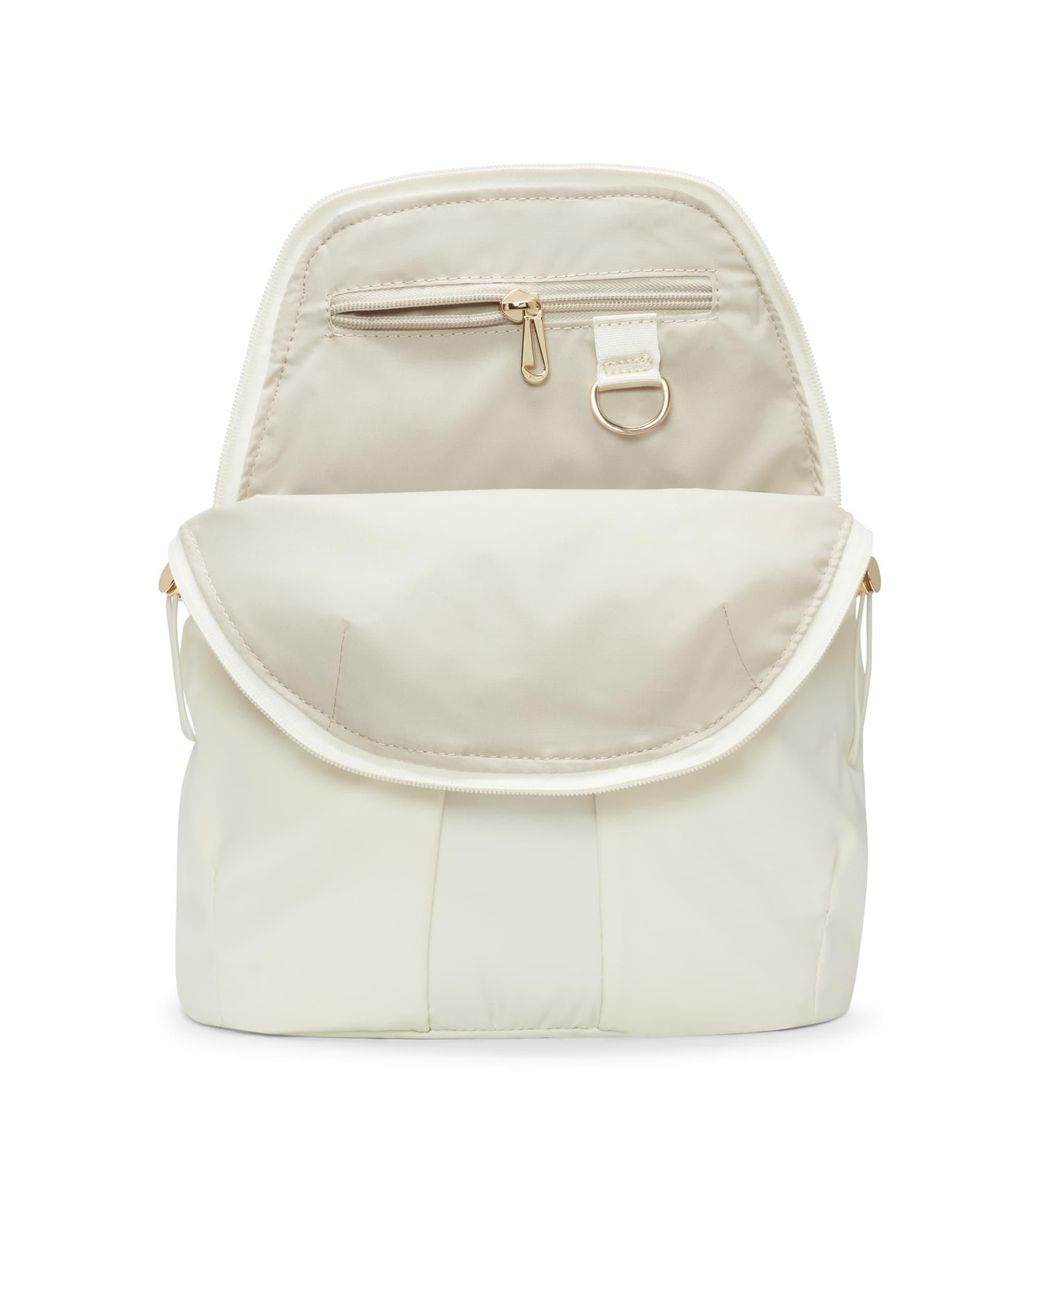 Nike Sportswear Futura Luxe Women's Mini Backpack (10L)